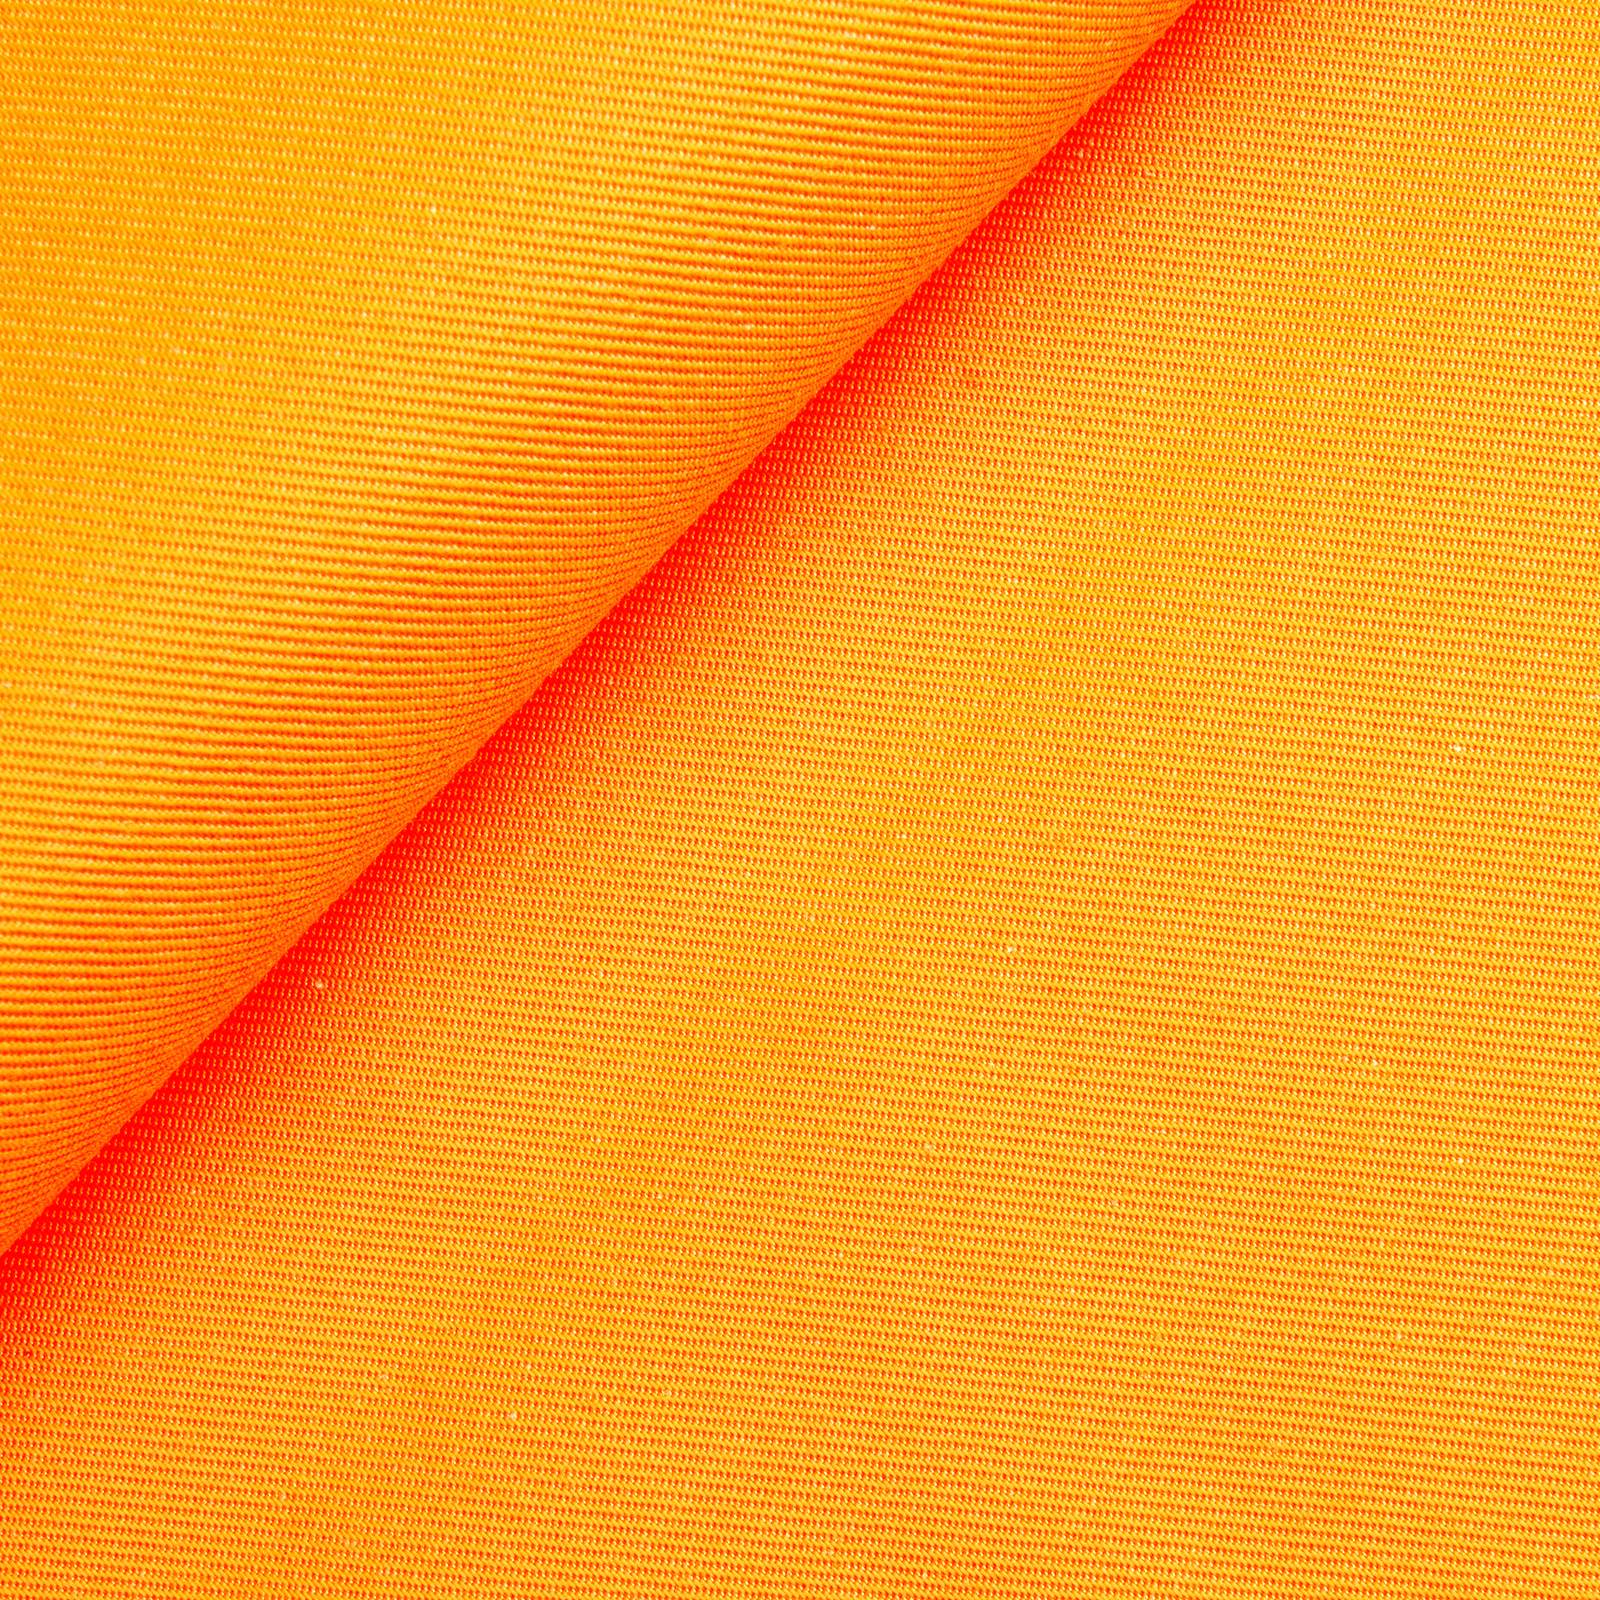 Mila - tessuto protezione dai raggi UV UPF 50+ - Arancione neon